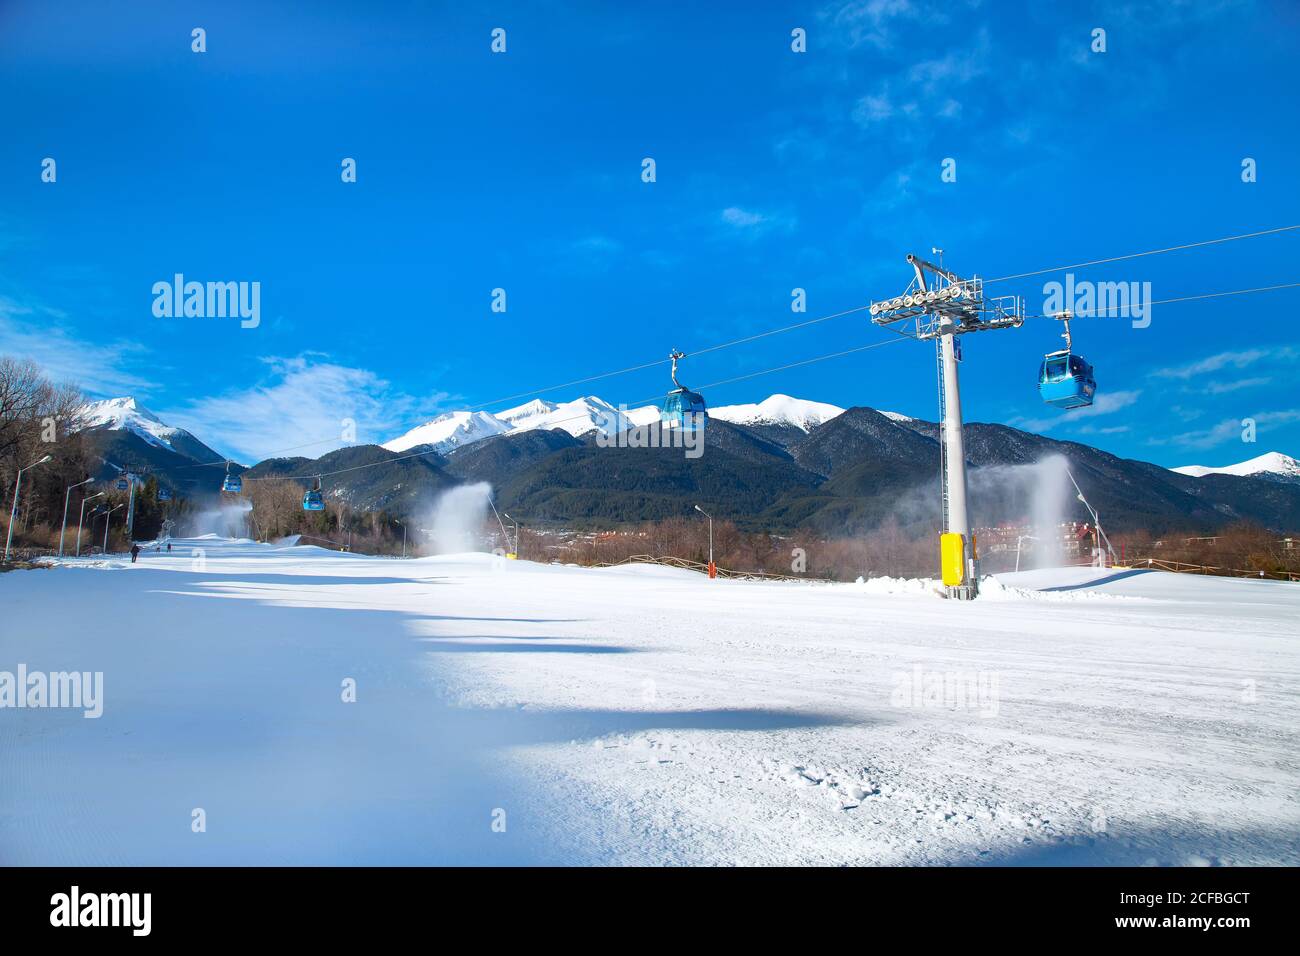 Bansko, Bulgarien - 19. Februar 2015: Bansko Seilbahn Kabine, Piste und Schnee Berge im Hintergrund Stockfoto